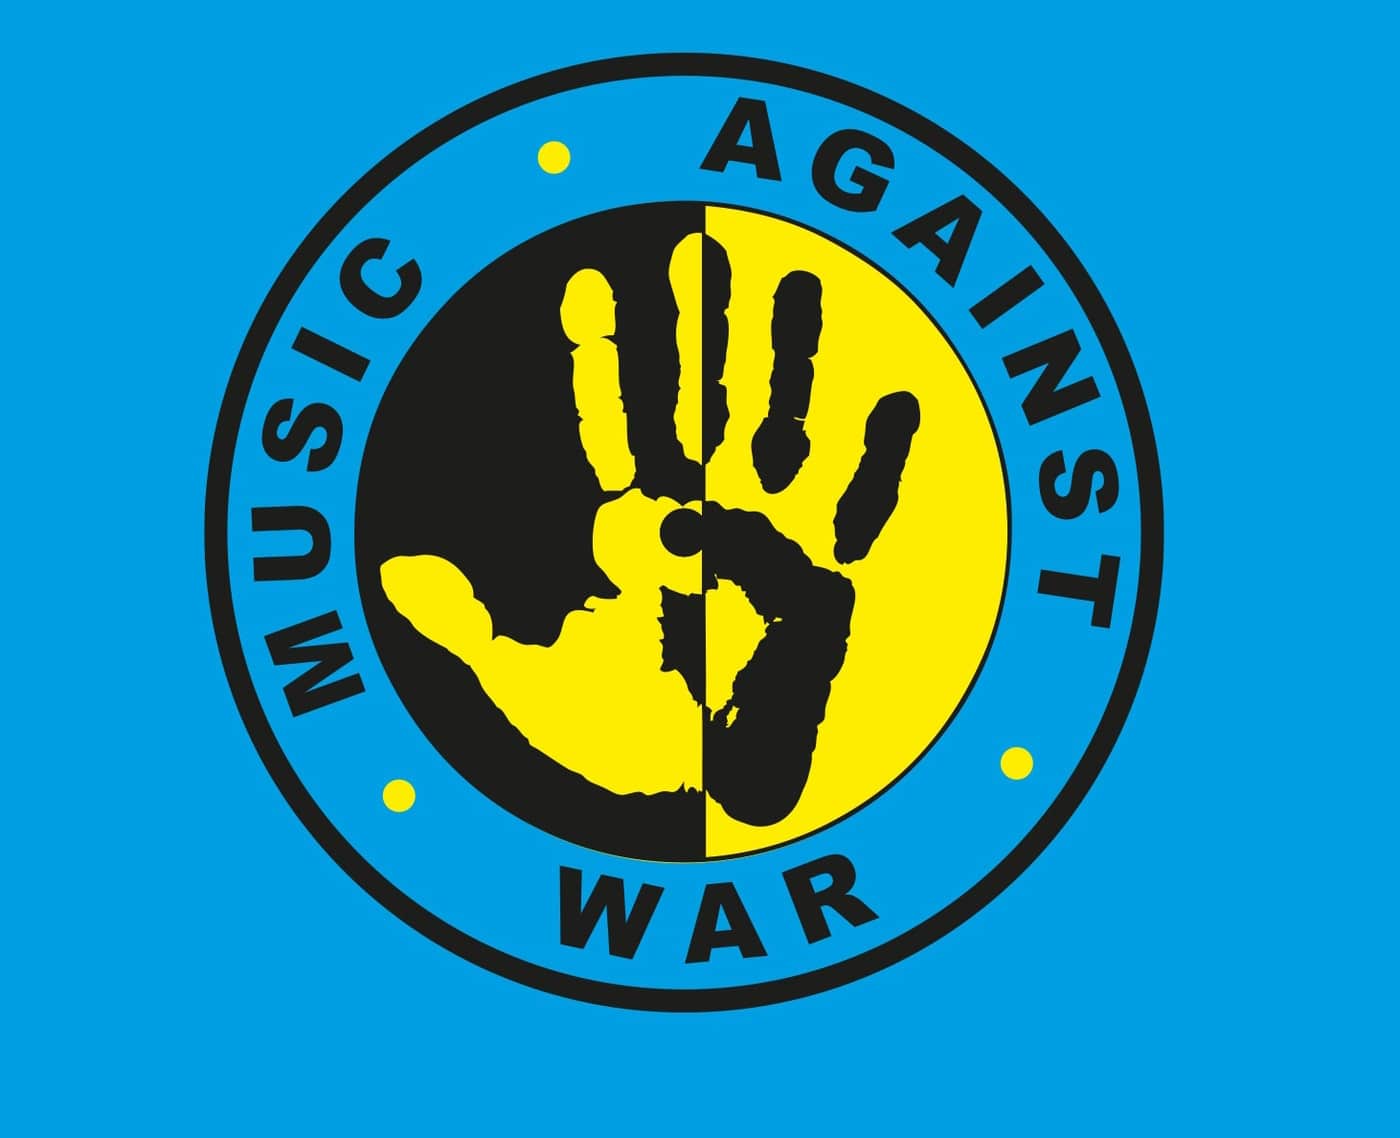 MUSIC AGAINST WAR